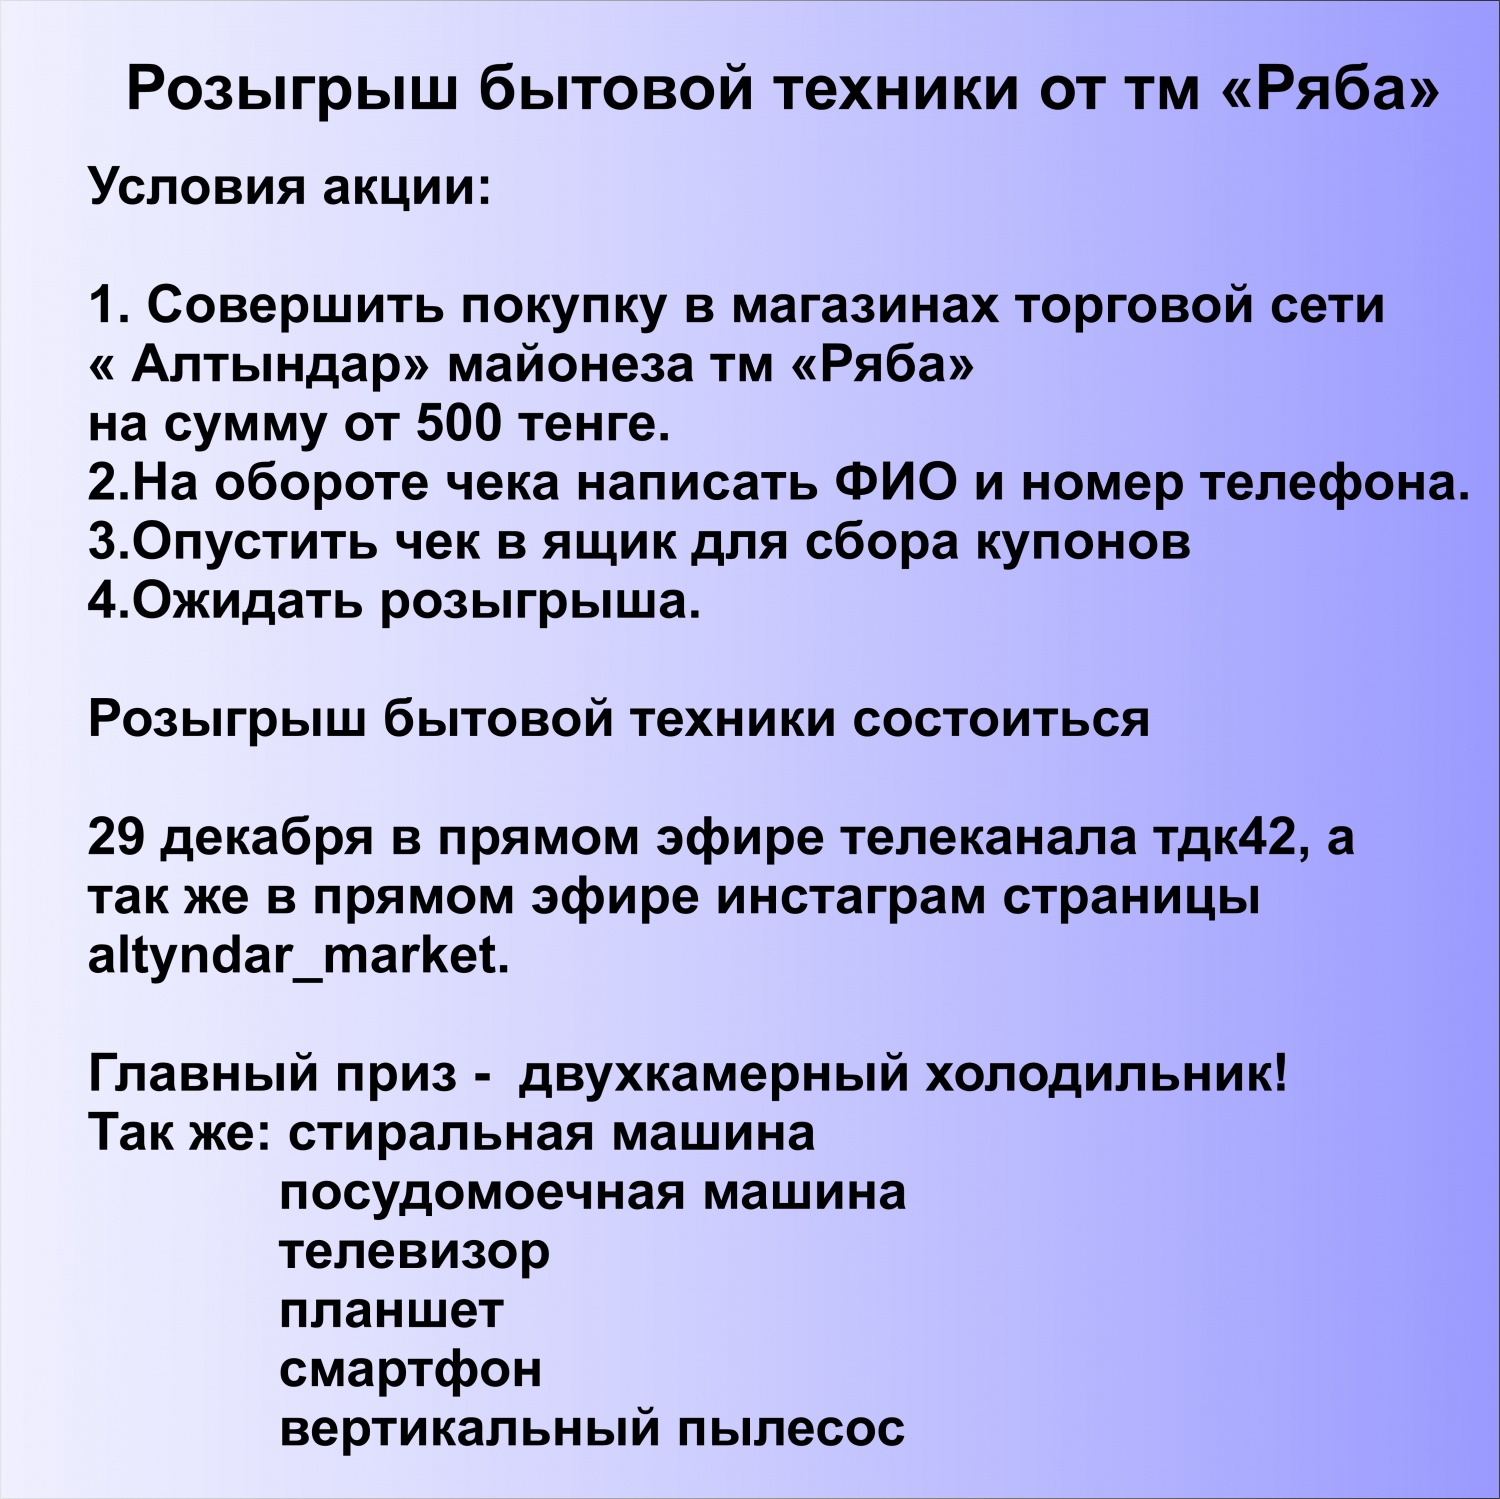 Розыгрыш бытовой техники от тм Ряба 1.11.20-28.12.20